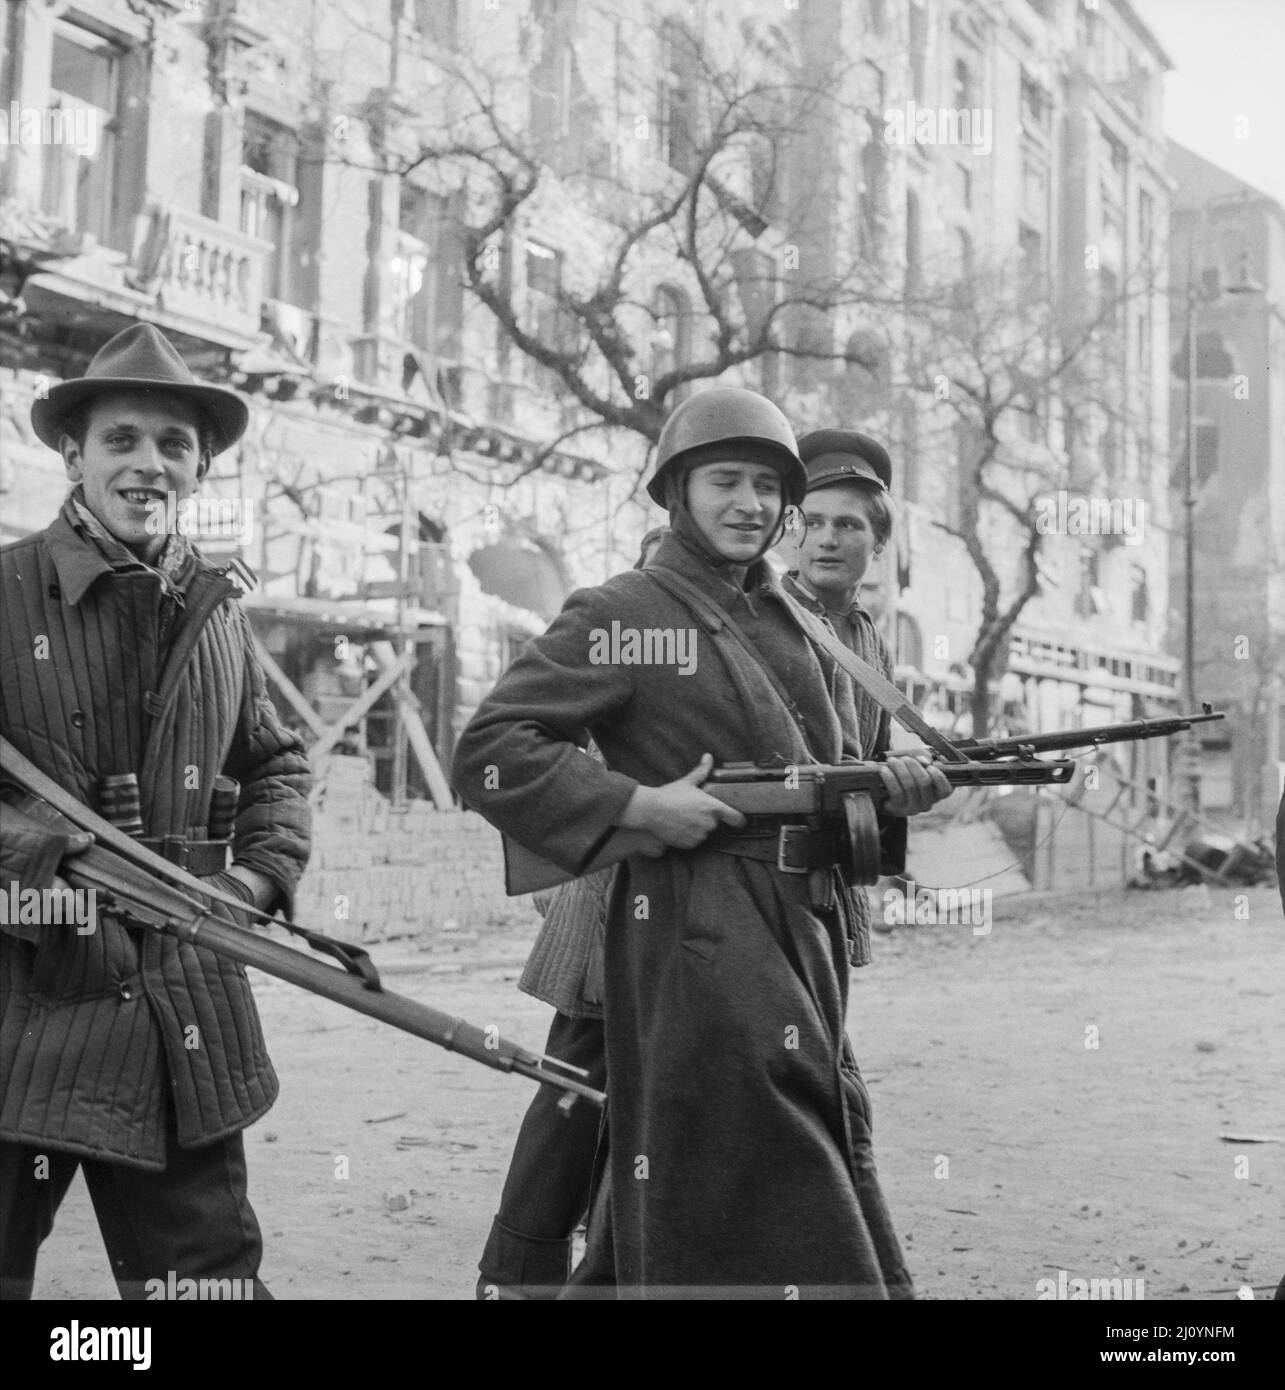 Antikommunistische ungarische revolutionäre inmitten der beschädigten Gebäude von Budapest, November 1956. Stockfoto